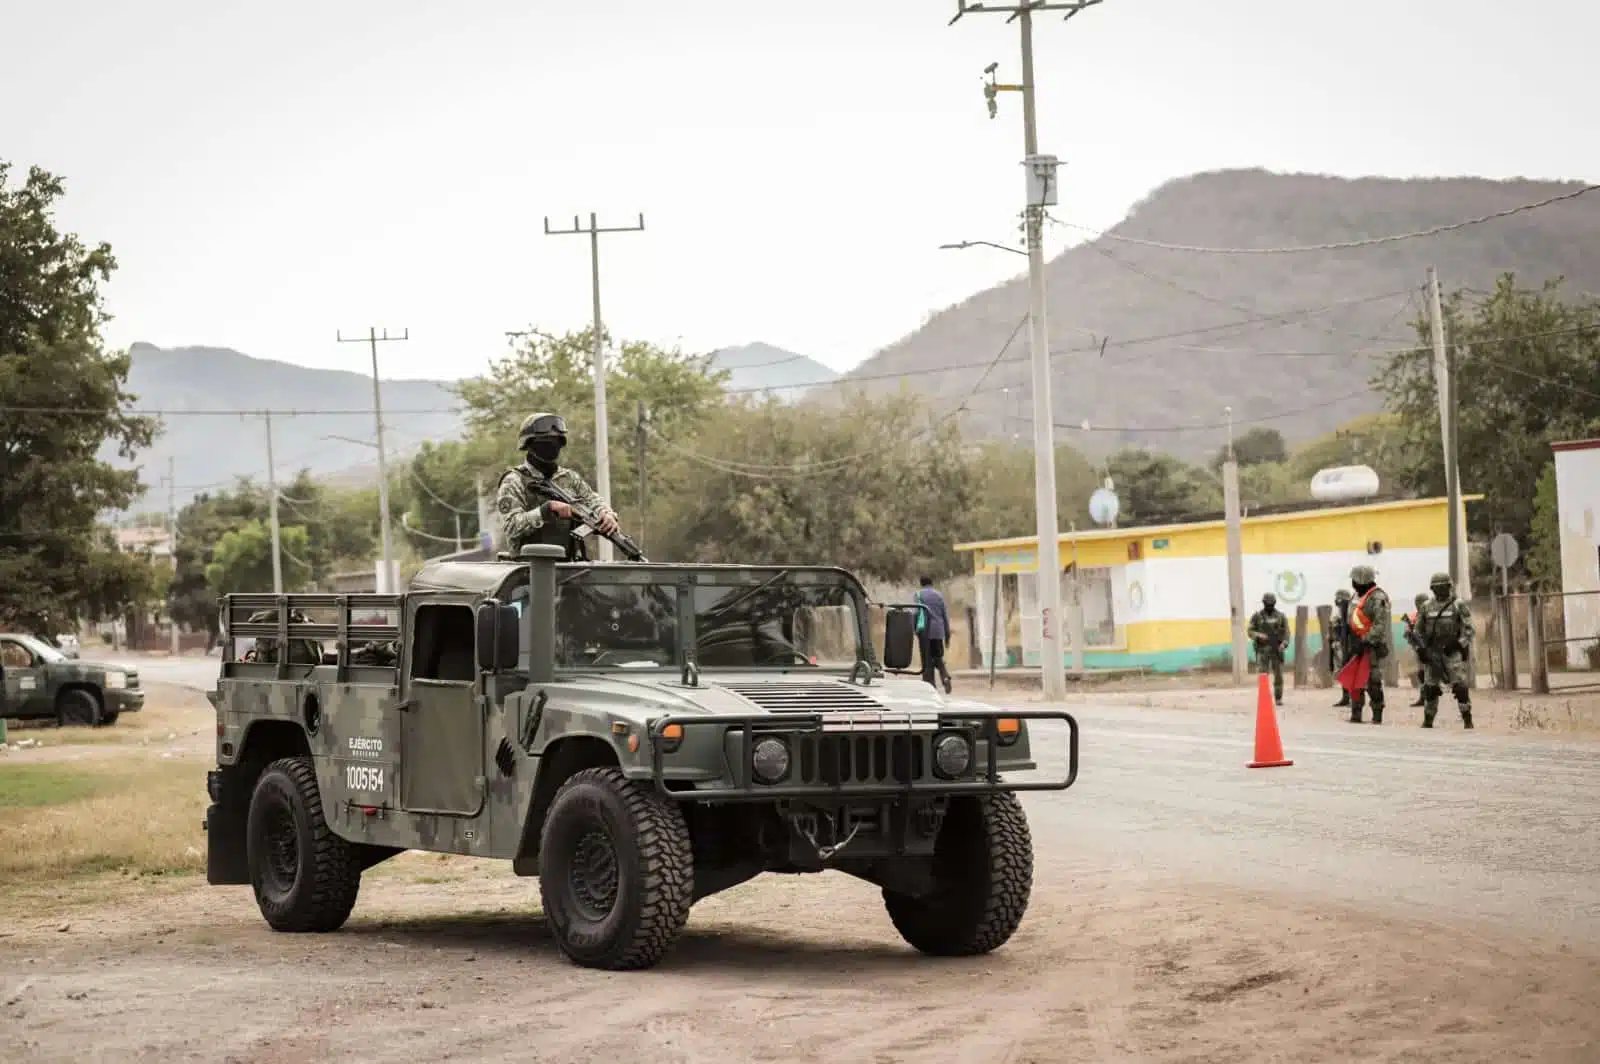 Ejército Mexicano fueron atacados por un grupo armado y tras la agresión se hizo un fuerte despliegue de uniformados al lugar